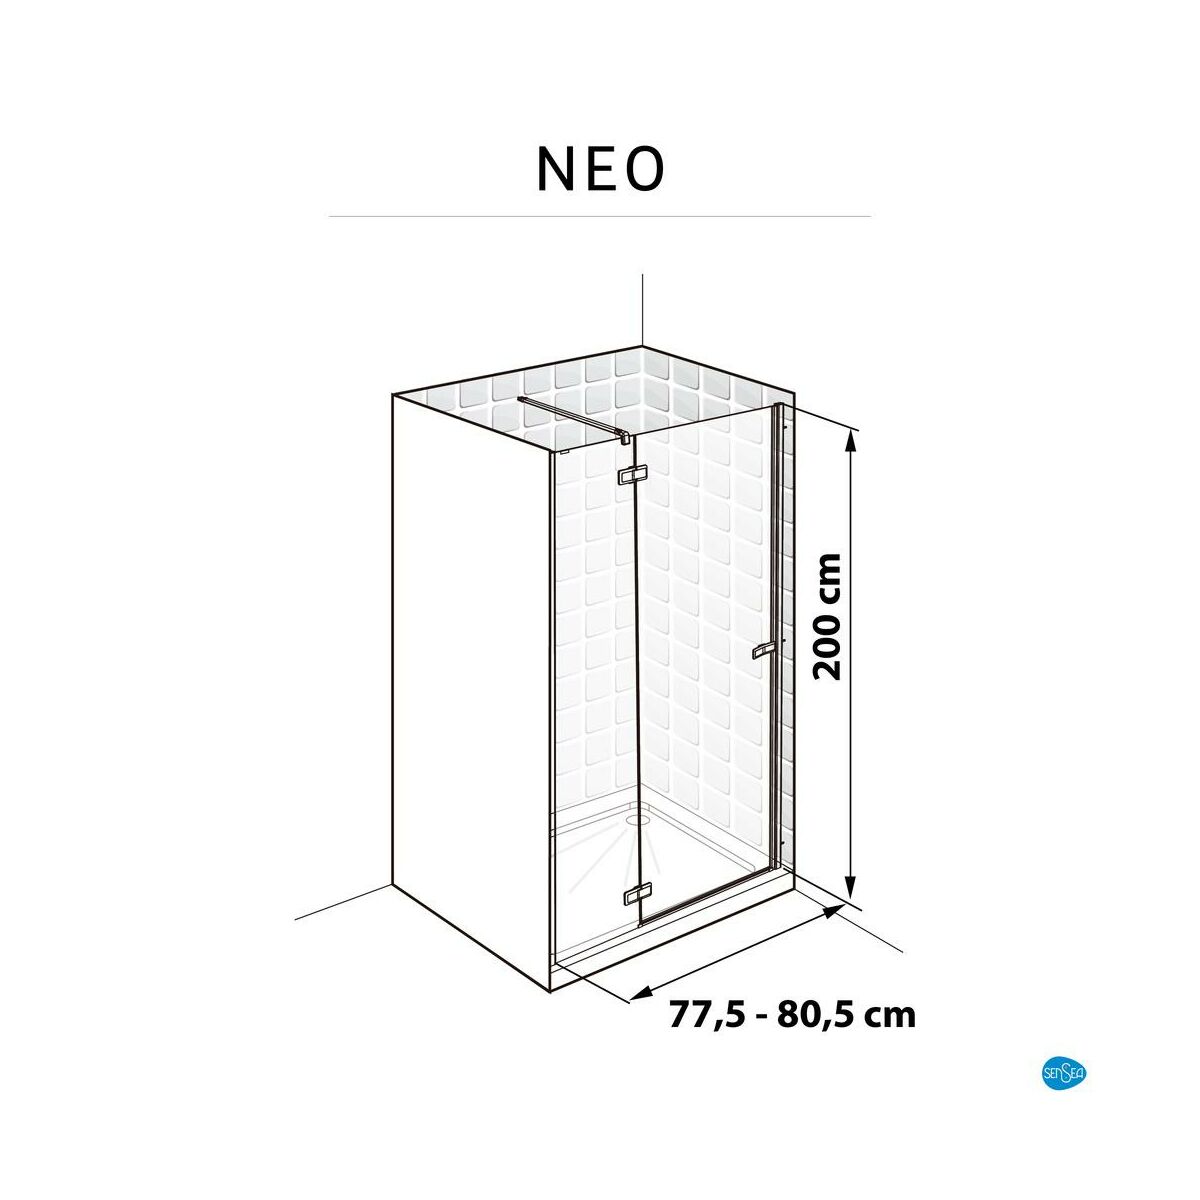 Drzwi prysznicowe uchylne Neo Struktura 80 X 200 Sensea